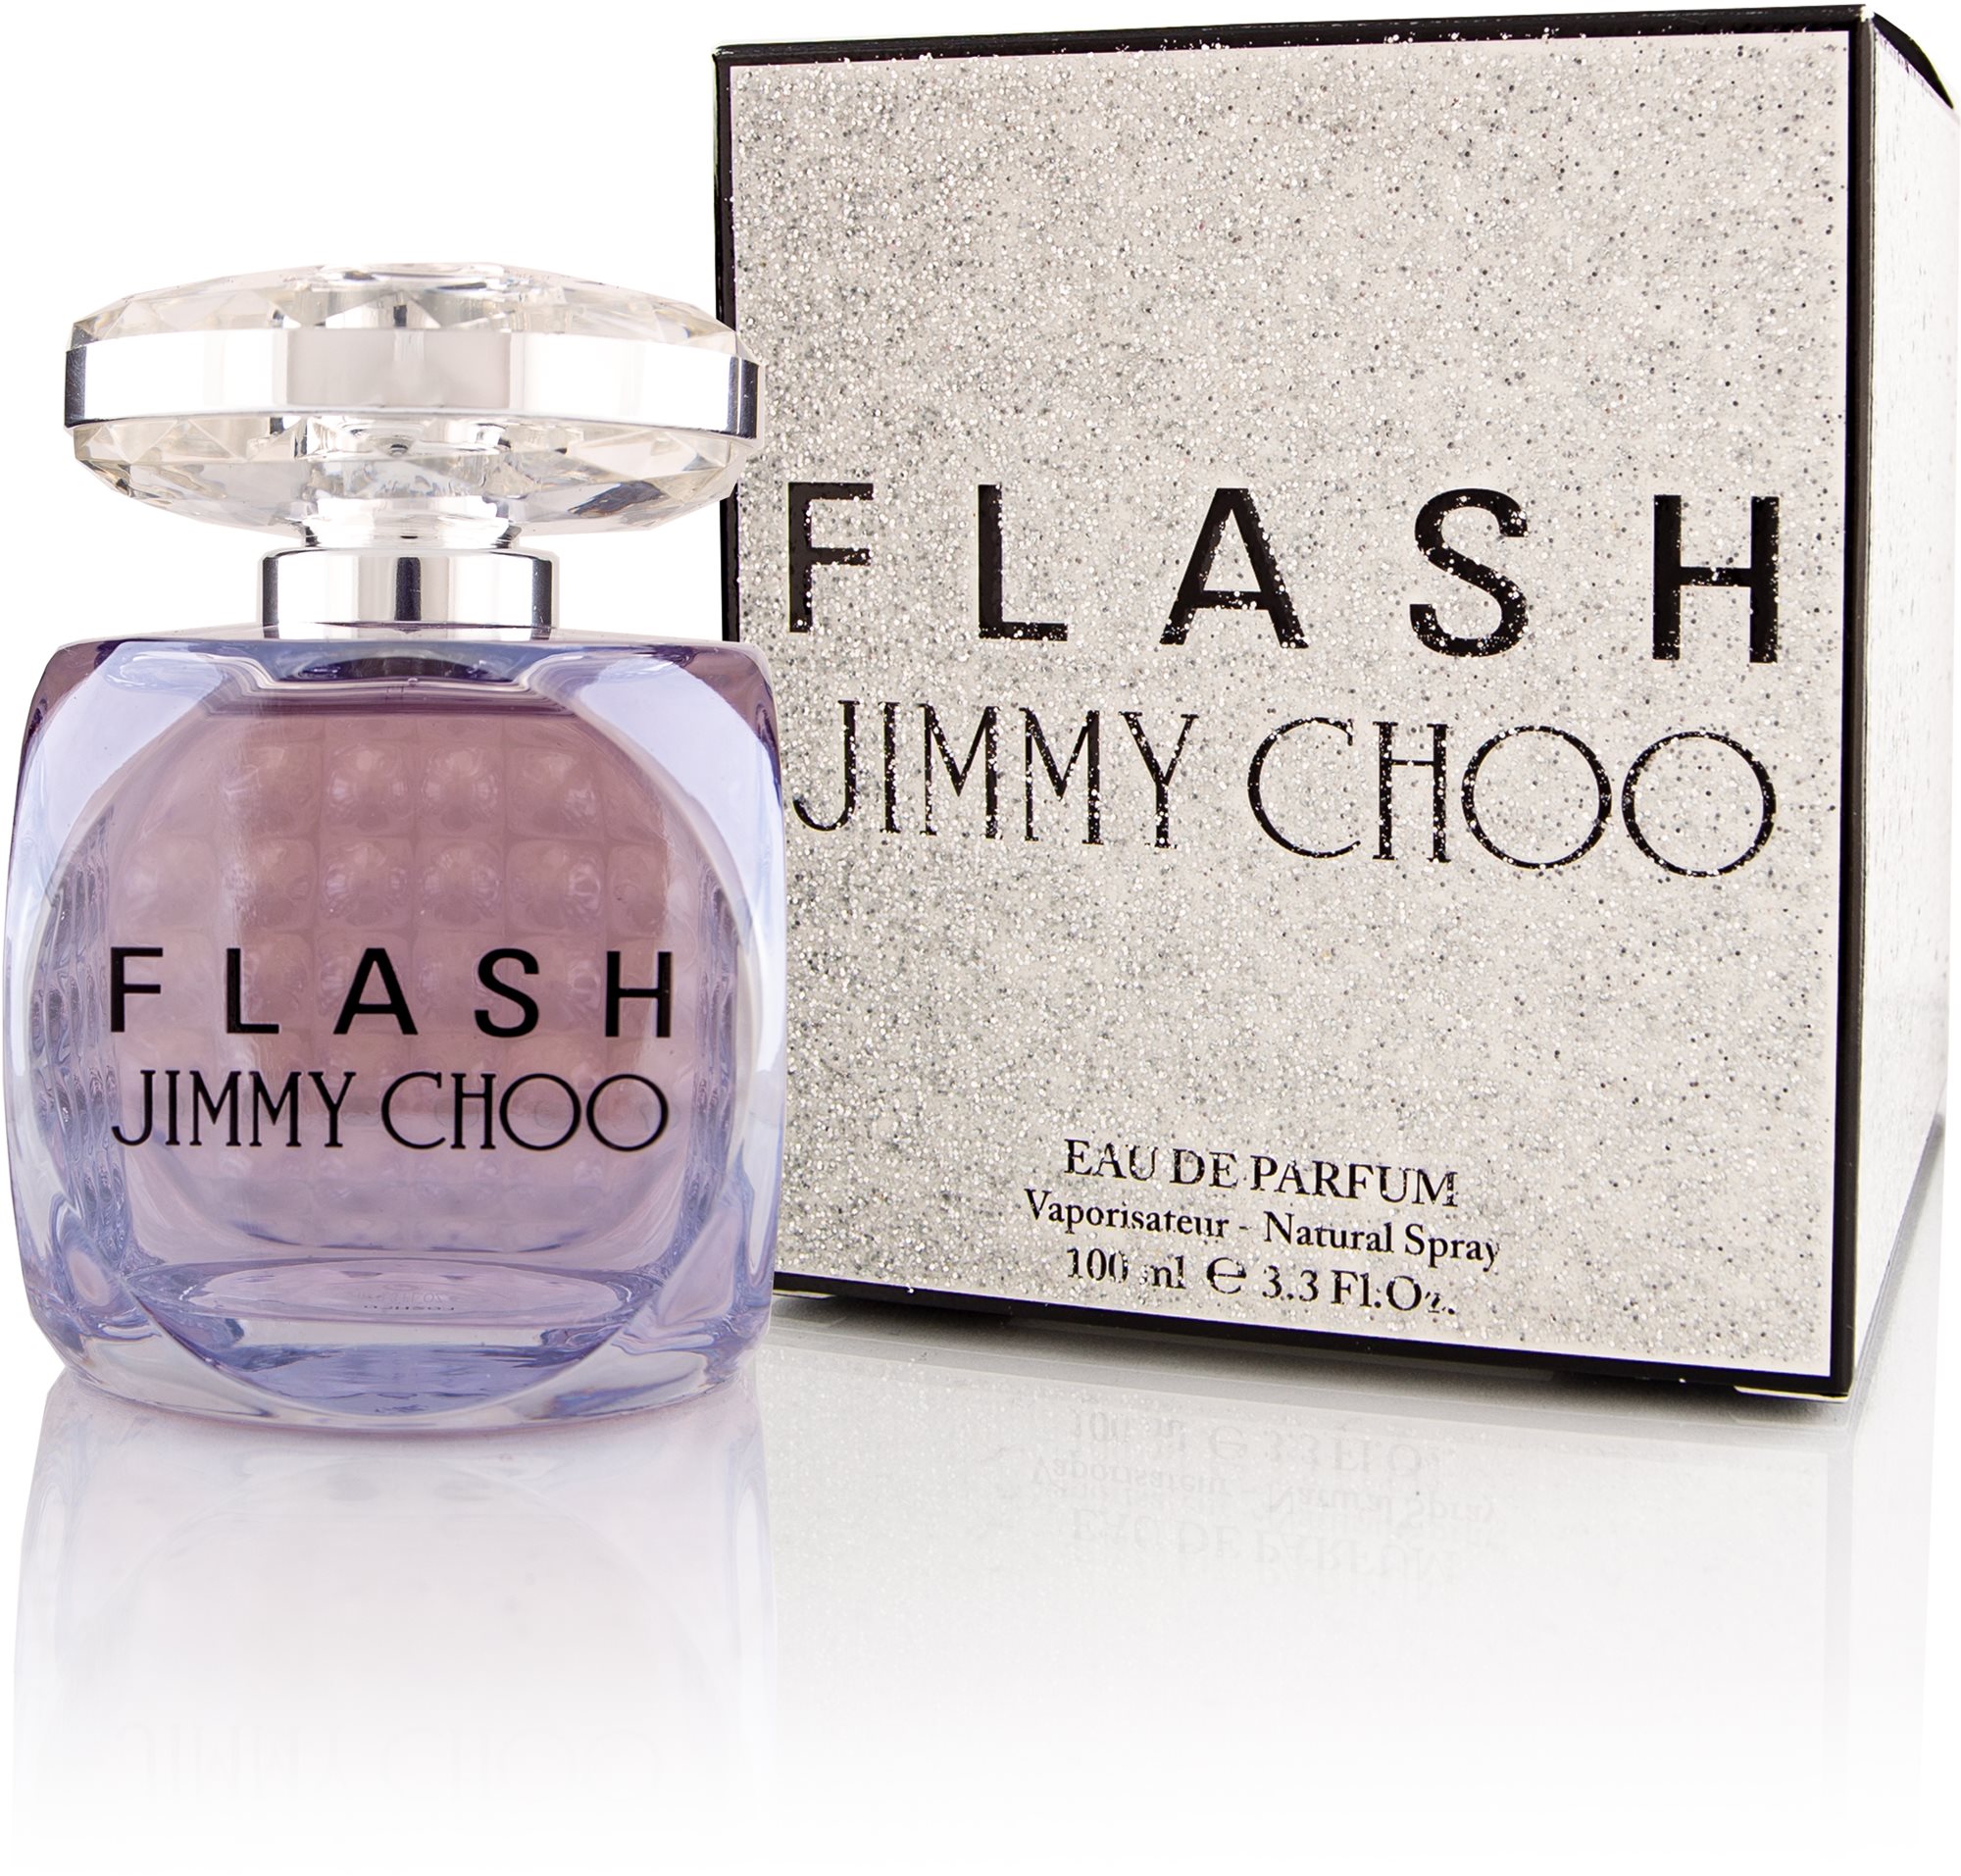 Jimmy Choo Flash Eau de Parfum hölgyeknek 100 ml